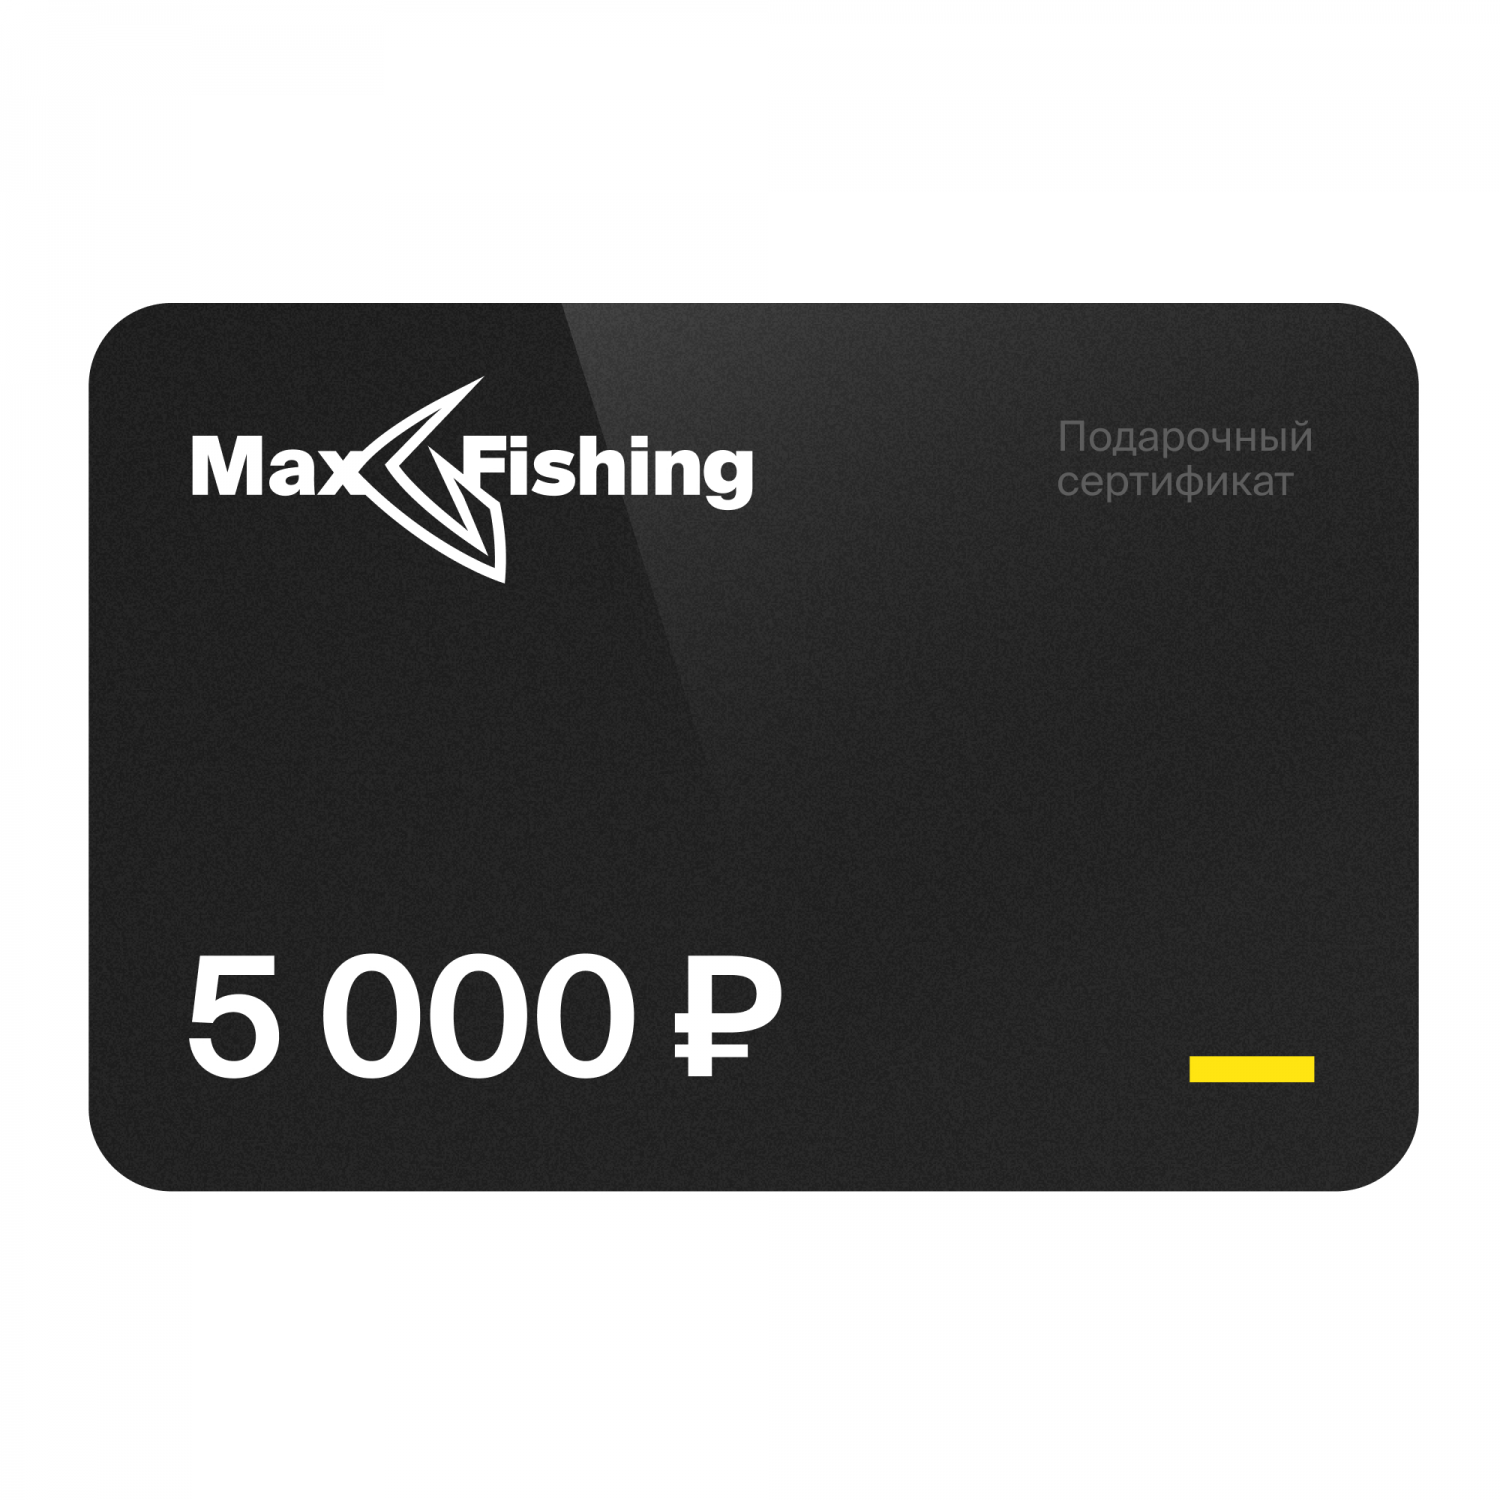 Подарочный сертификат MaxFishing 5 000 ₽ подарочный сертификат maxfishing 100